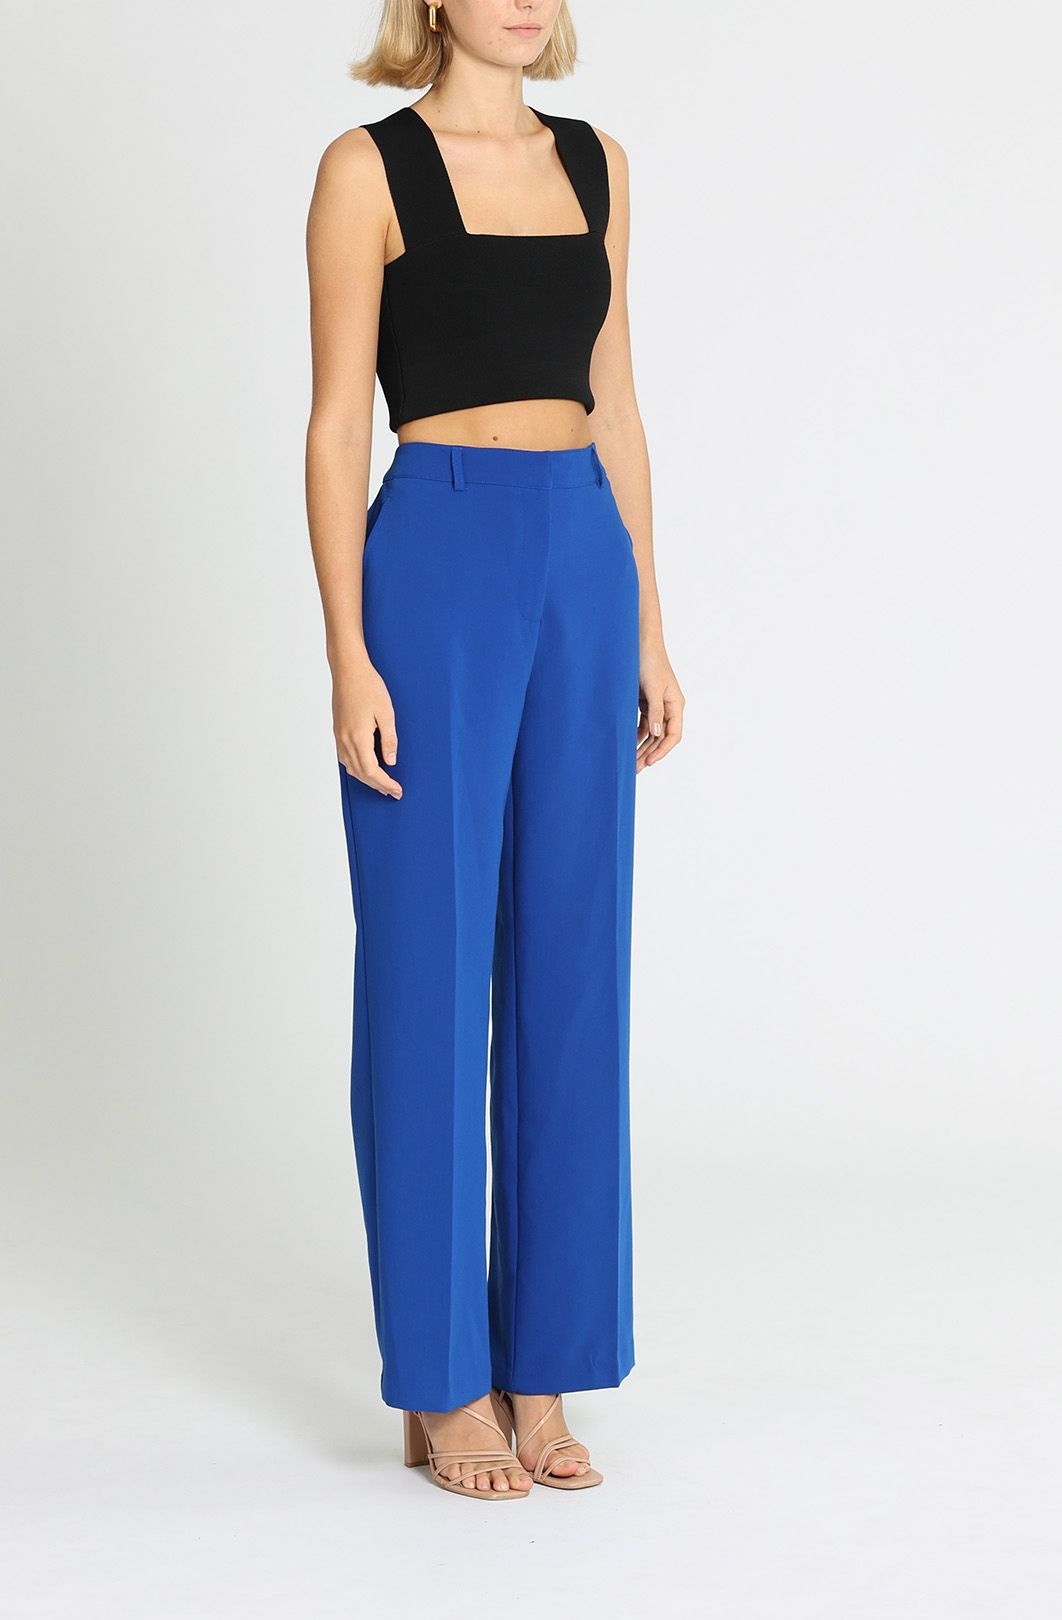 Zara, Pants & Jumpsuits, Zara Cobalt Blue High Waist Trouser Pants Size  Small